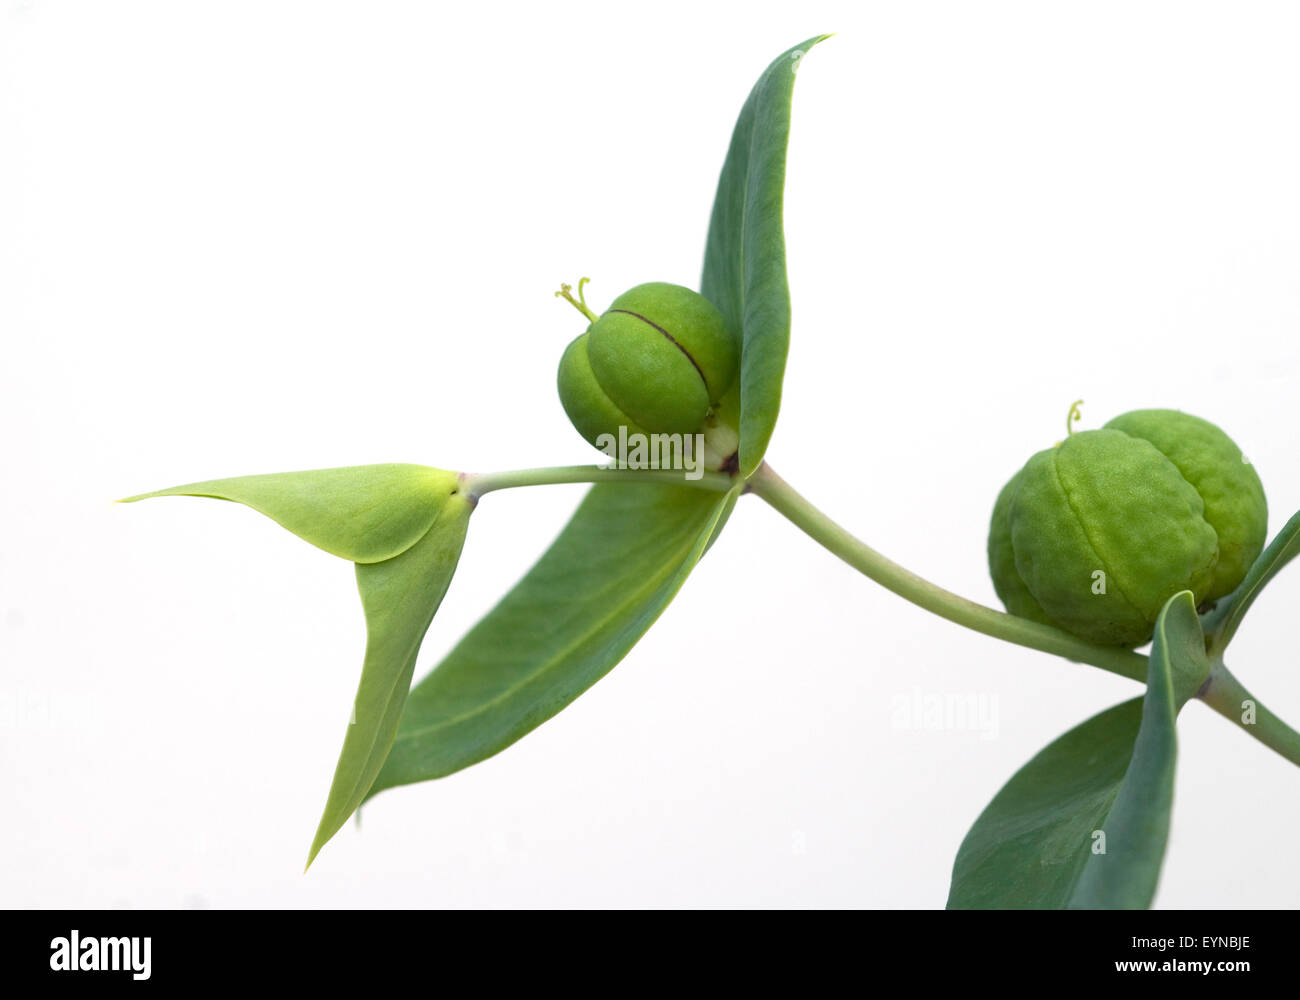 Kreuzblaettrige Wolfsmilch, Wolfsmilch, Euphorbia, lathyrus, Stock Photo